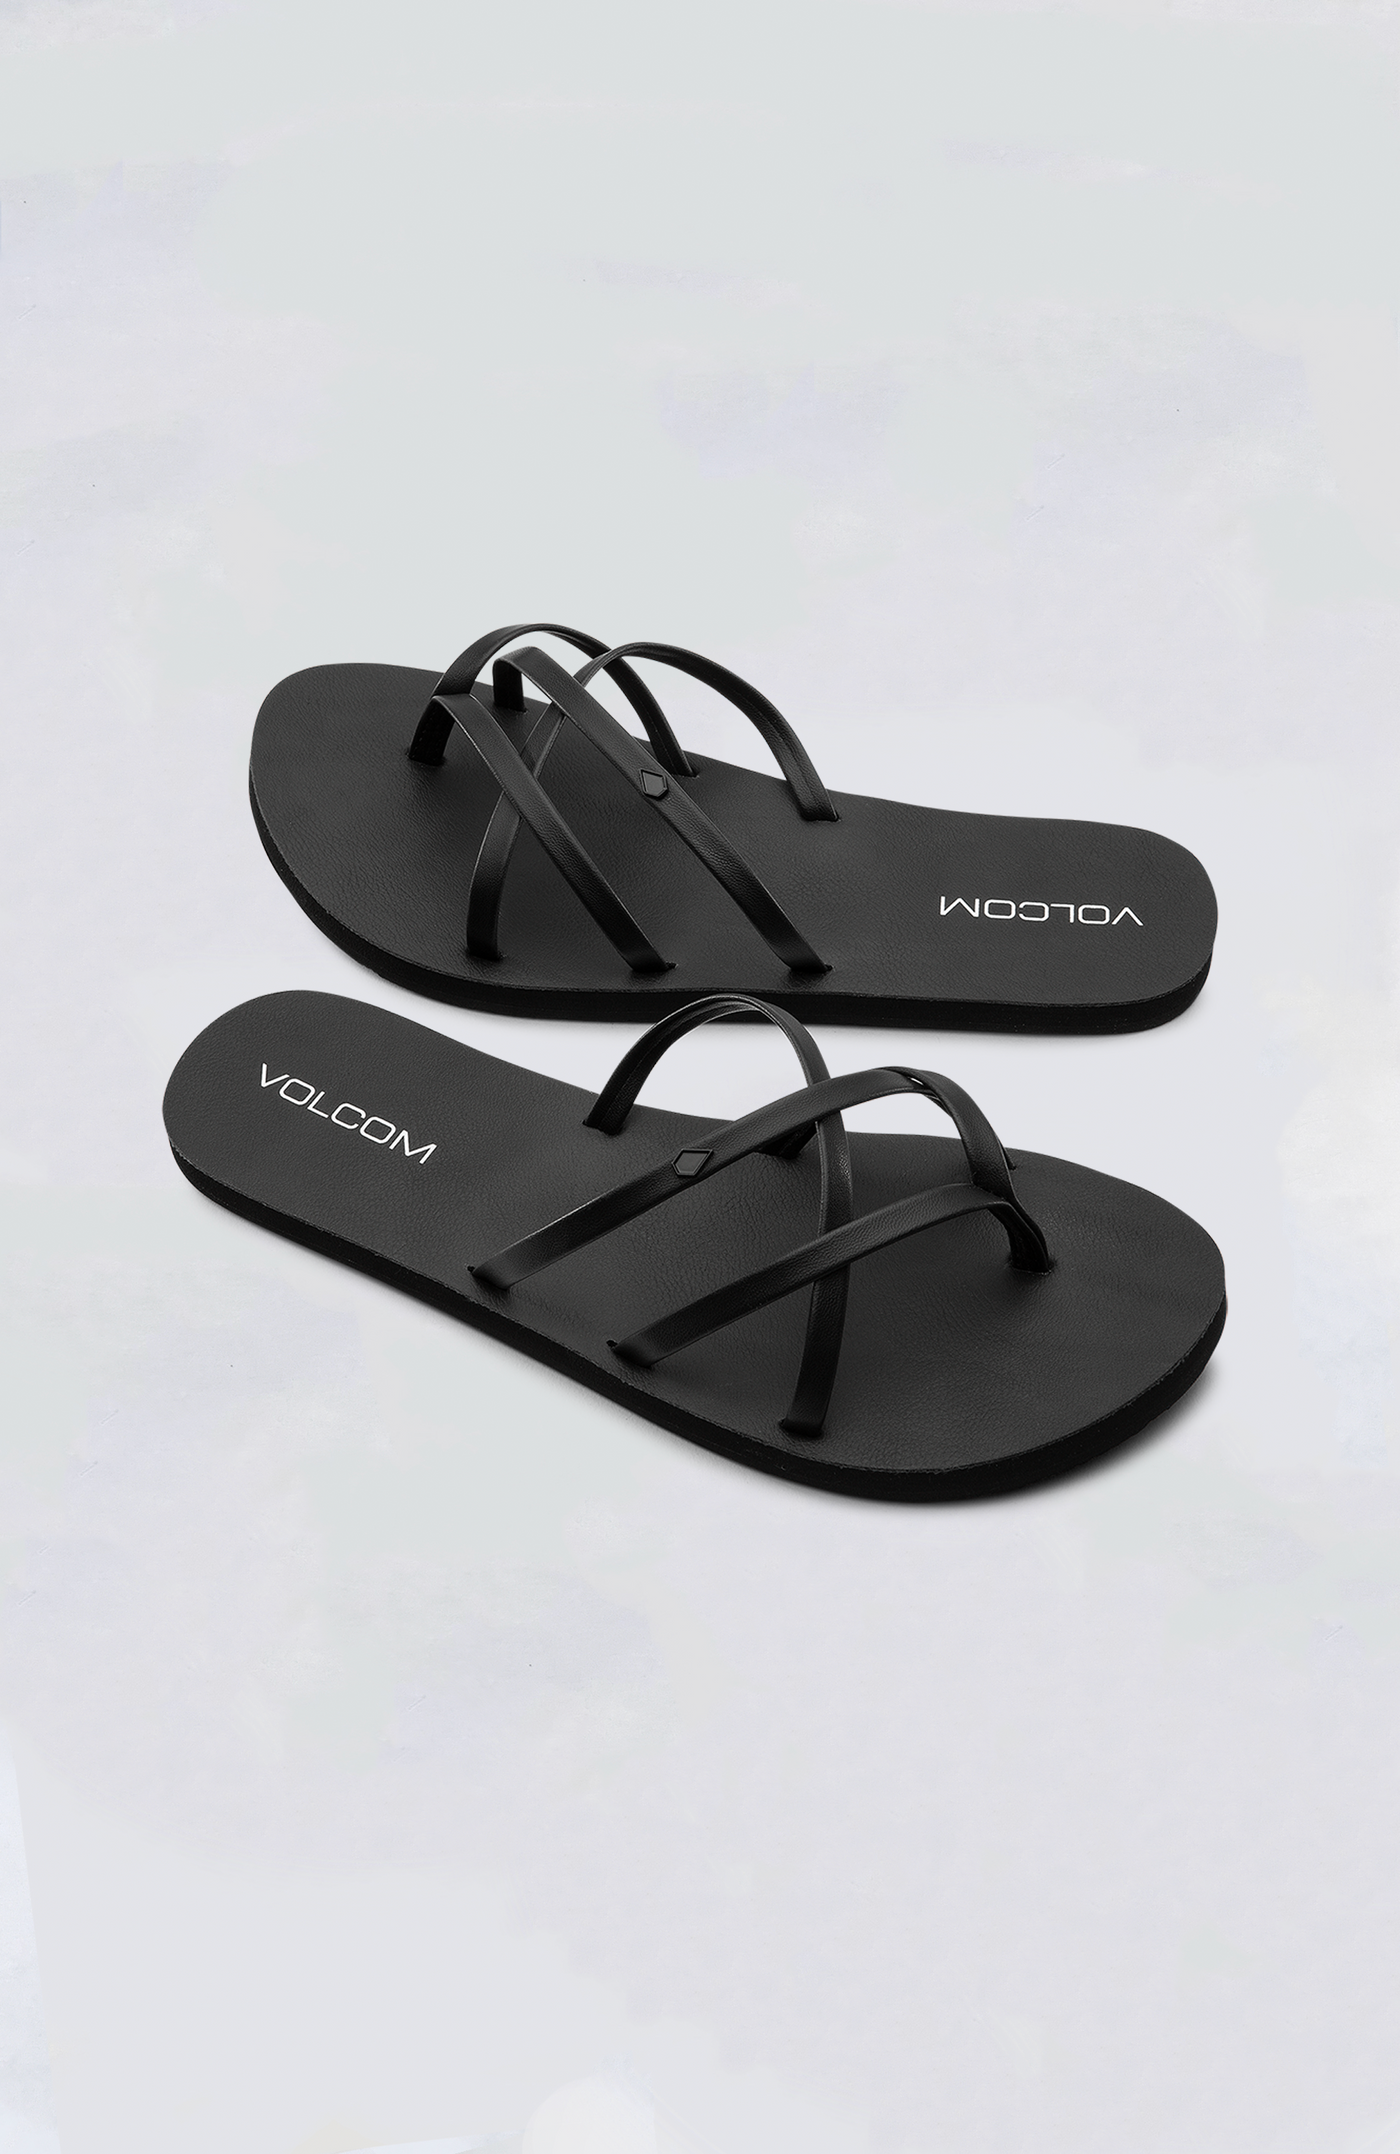 Volcom Women's Sandals - New School II